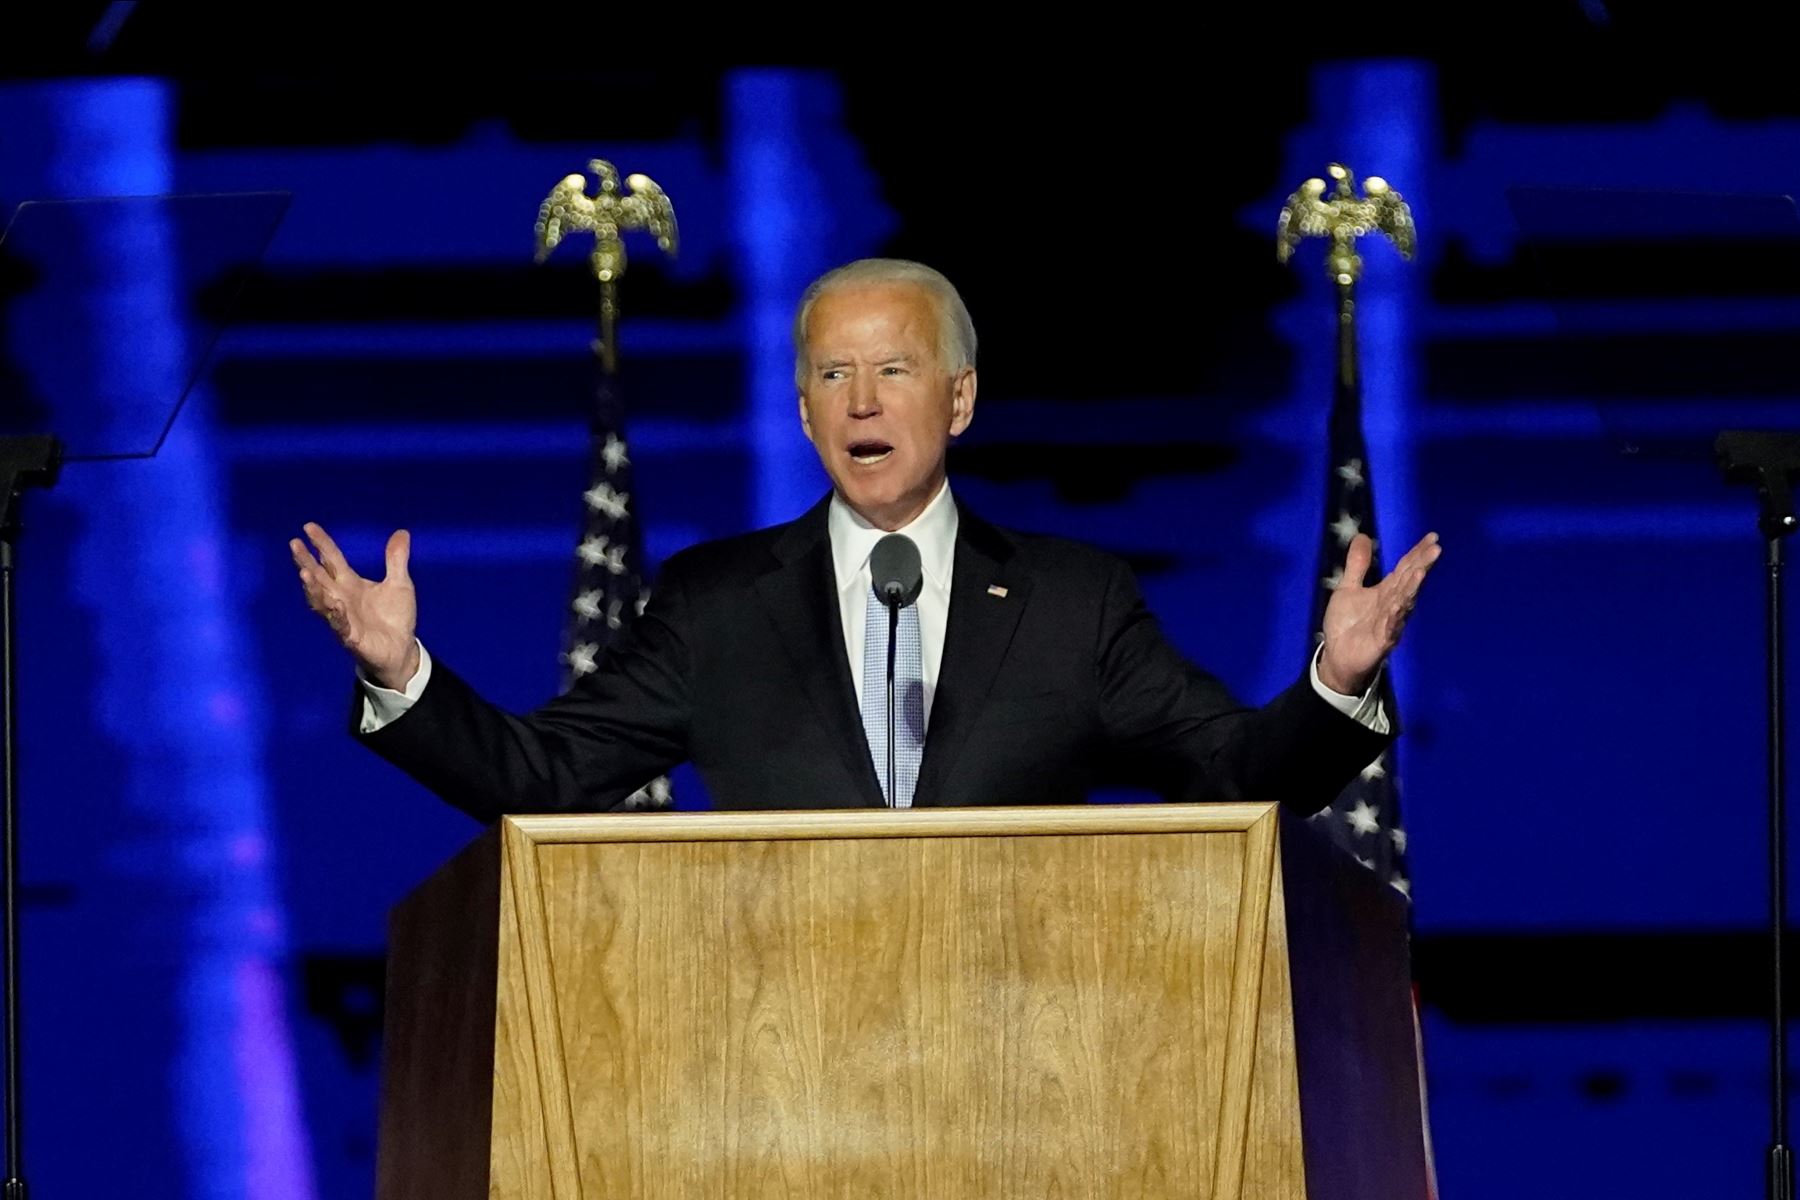 El presidente electo de EE. UU. Joe Biden, pronuncia un discurso en Wilmington, Delaware, luego de ser declarado ganador de las elecciones presidenciales de EE. UU.
Foto: AFP